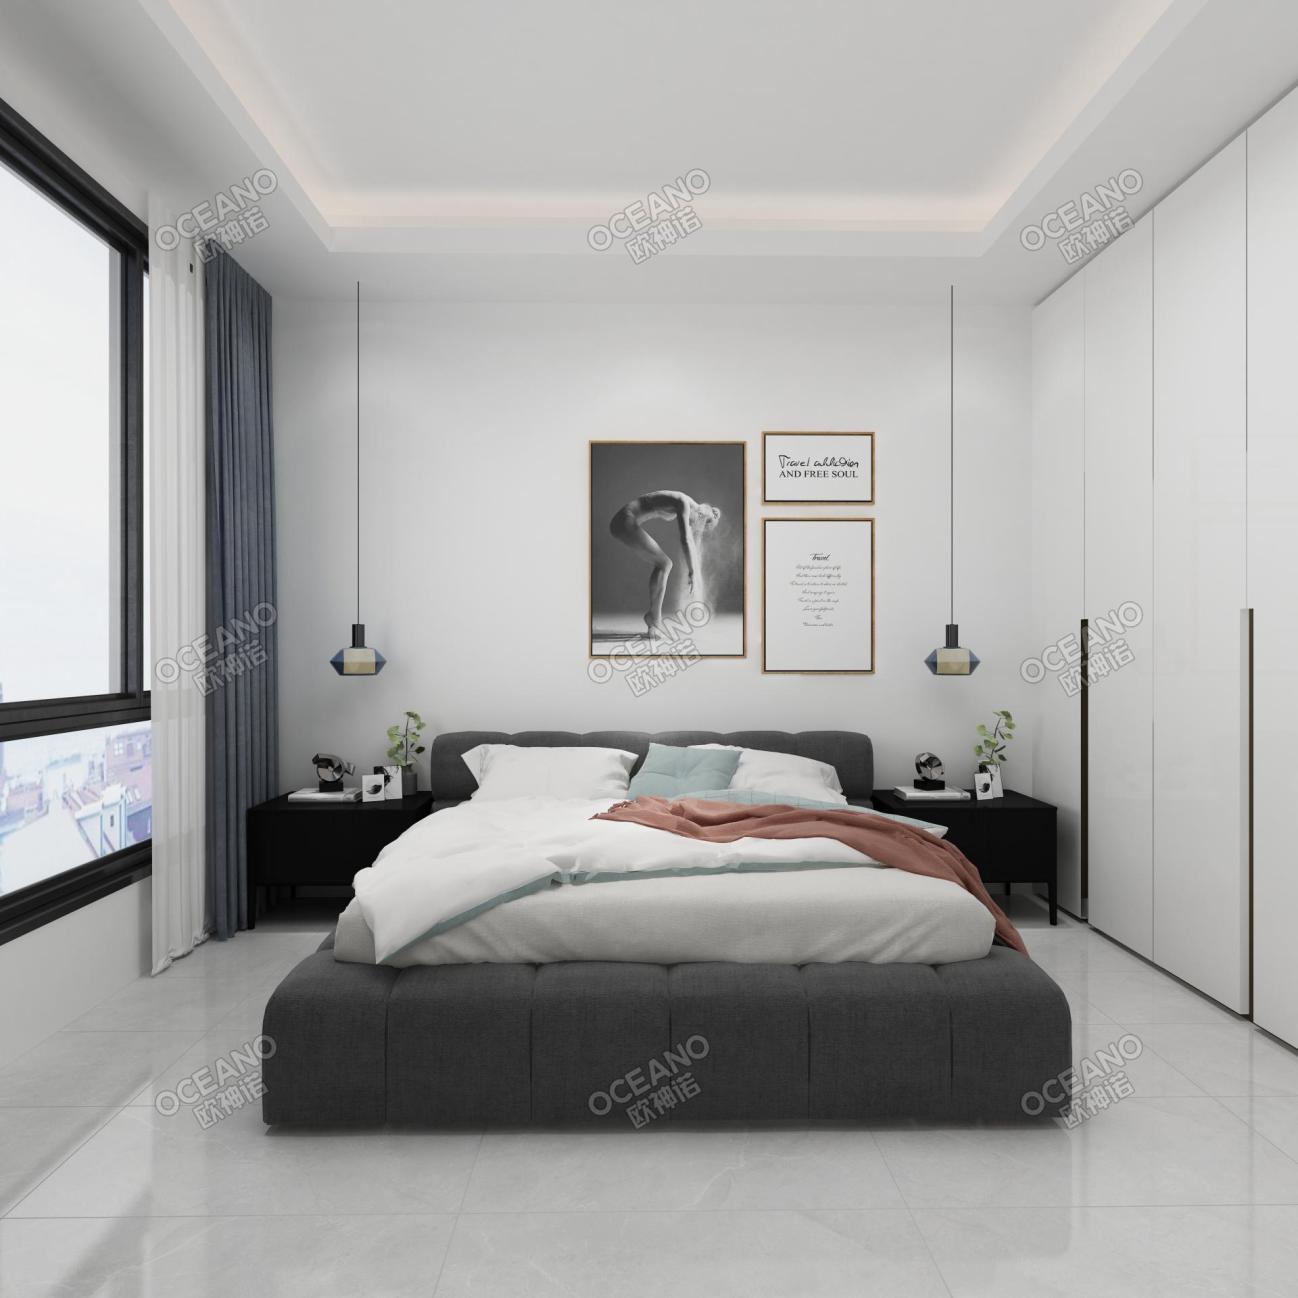 壹亮马li户型现代卧室-欧神诺瓷砖效果图